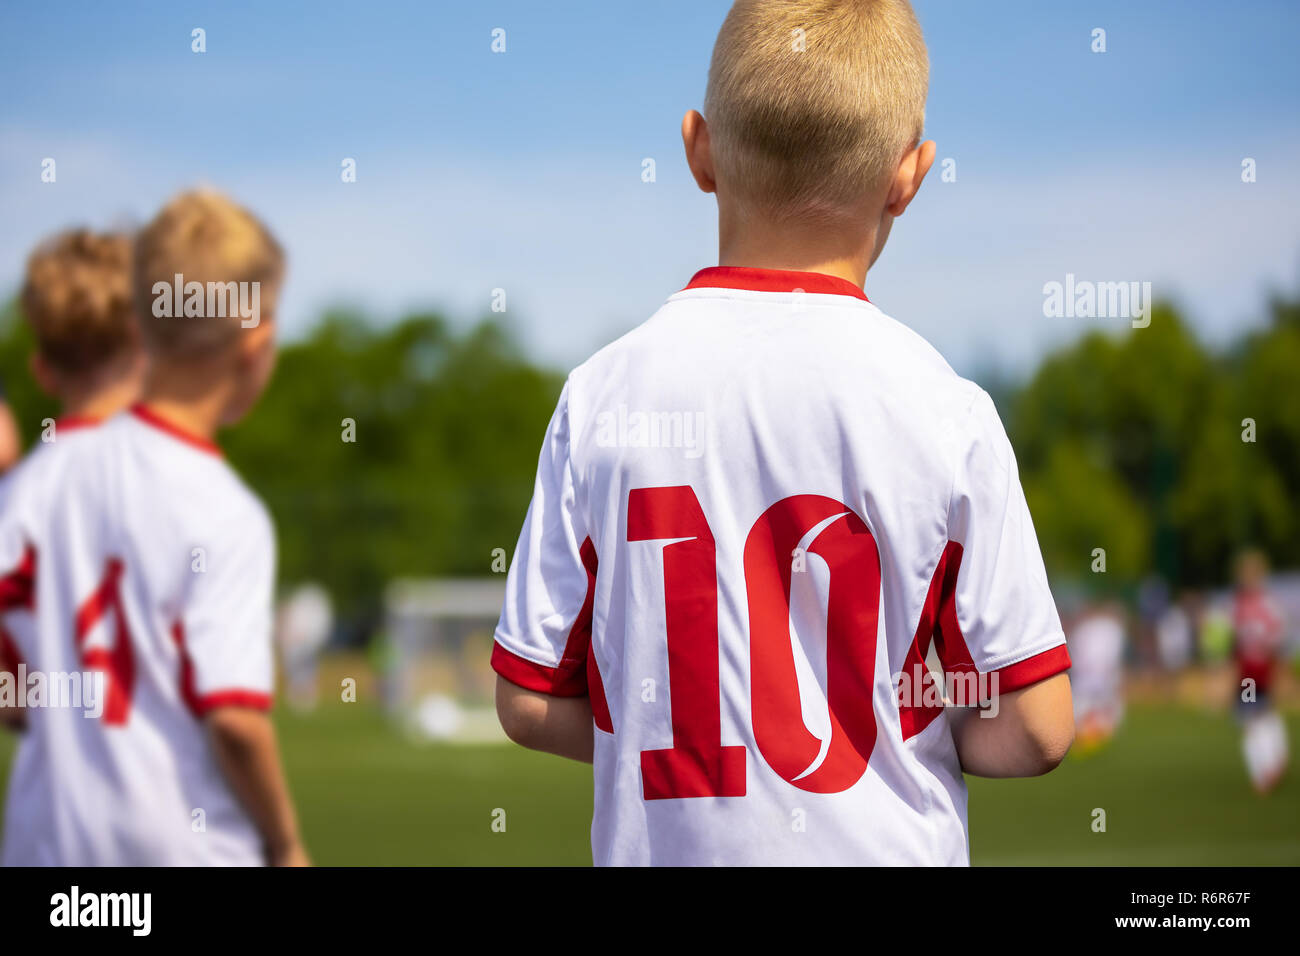 Los jóvenes jugadores de fútbol europeo caucásico esperando en la banqueta fútbol y viendo fútbol. Fútbol Juvenil imagen horizontal con fondo borroso Foto de stock